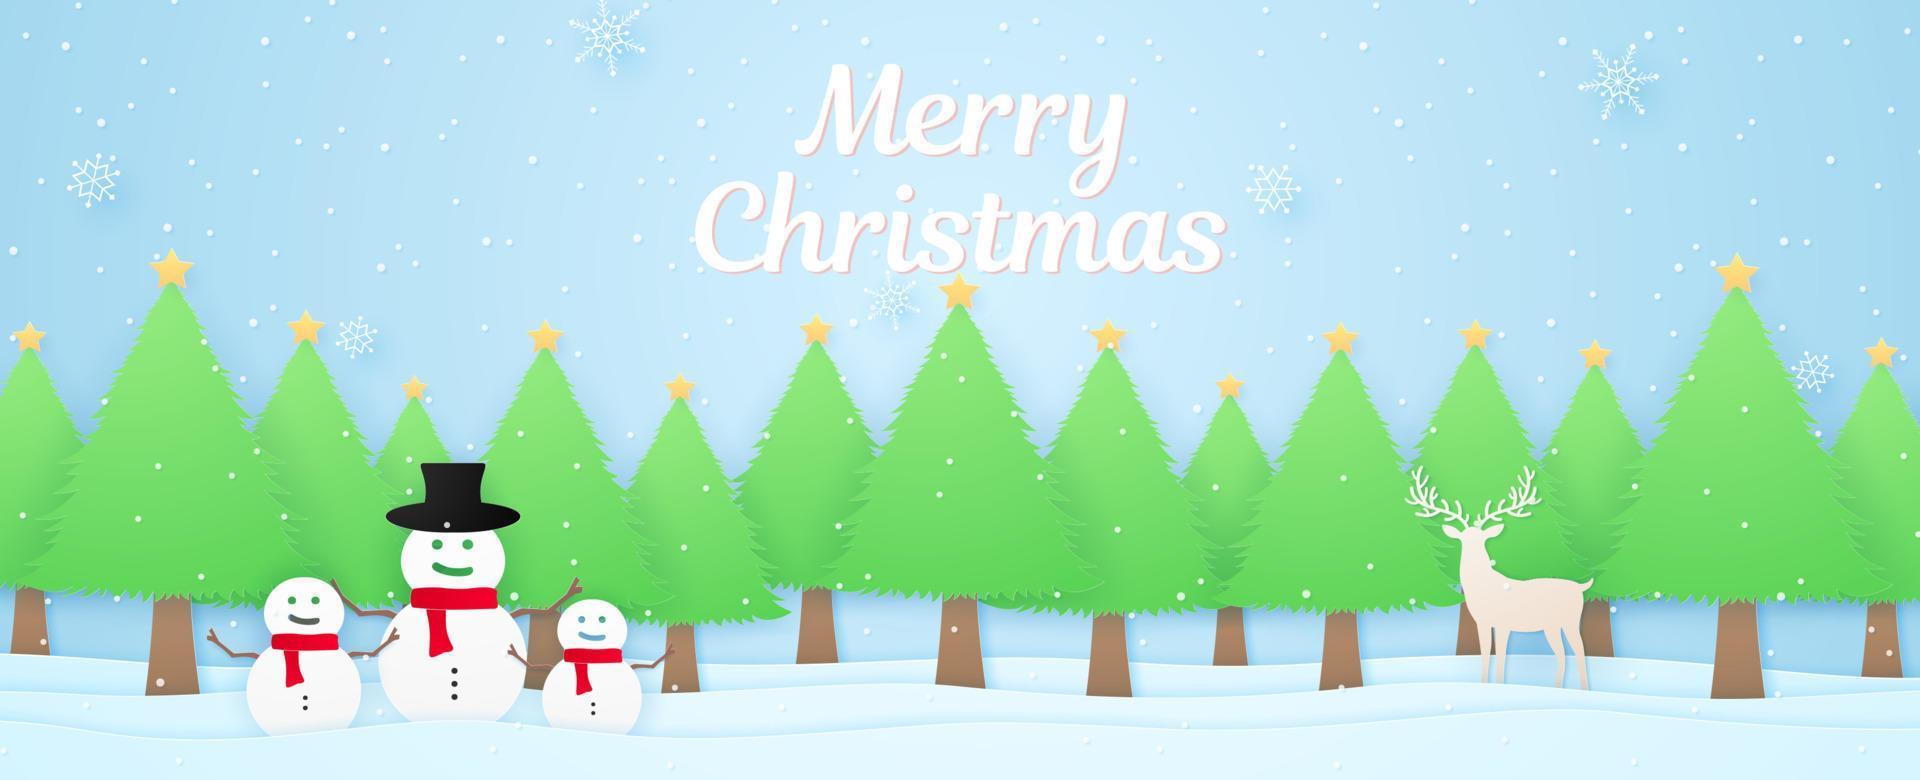 paisaje invernal con nieve en los árboles de navidad y muñeco de nieve para el concepto de feliz navidad en estilo de arte de papel vector